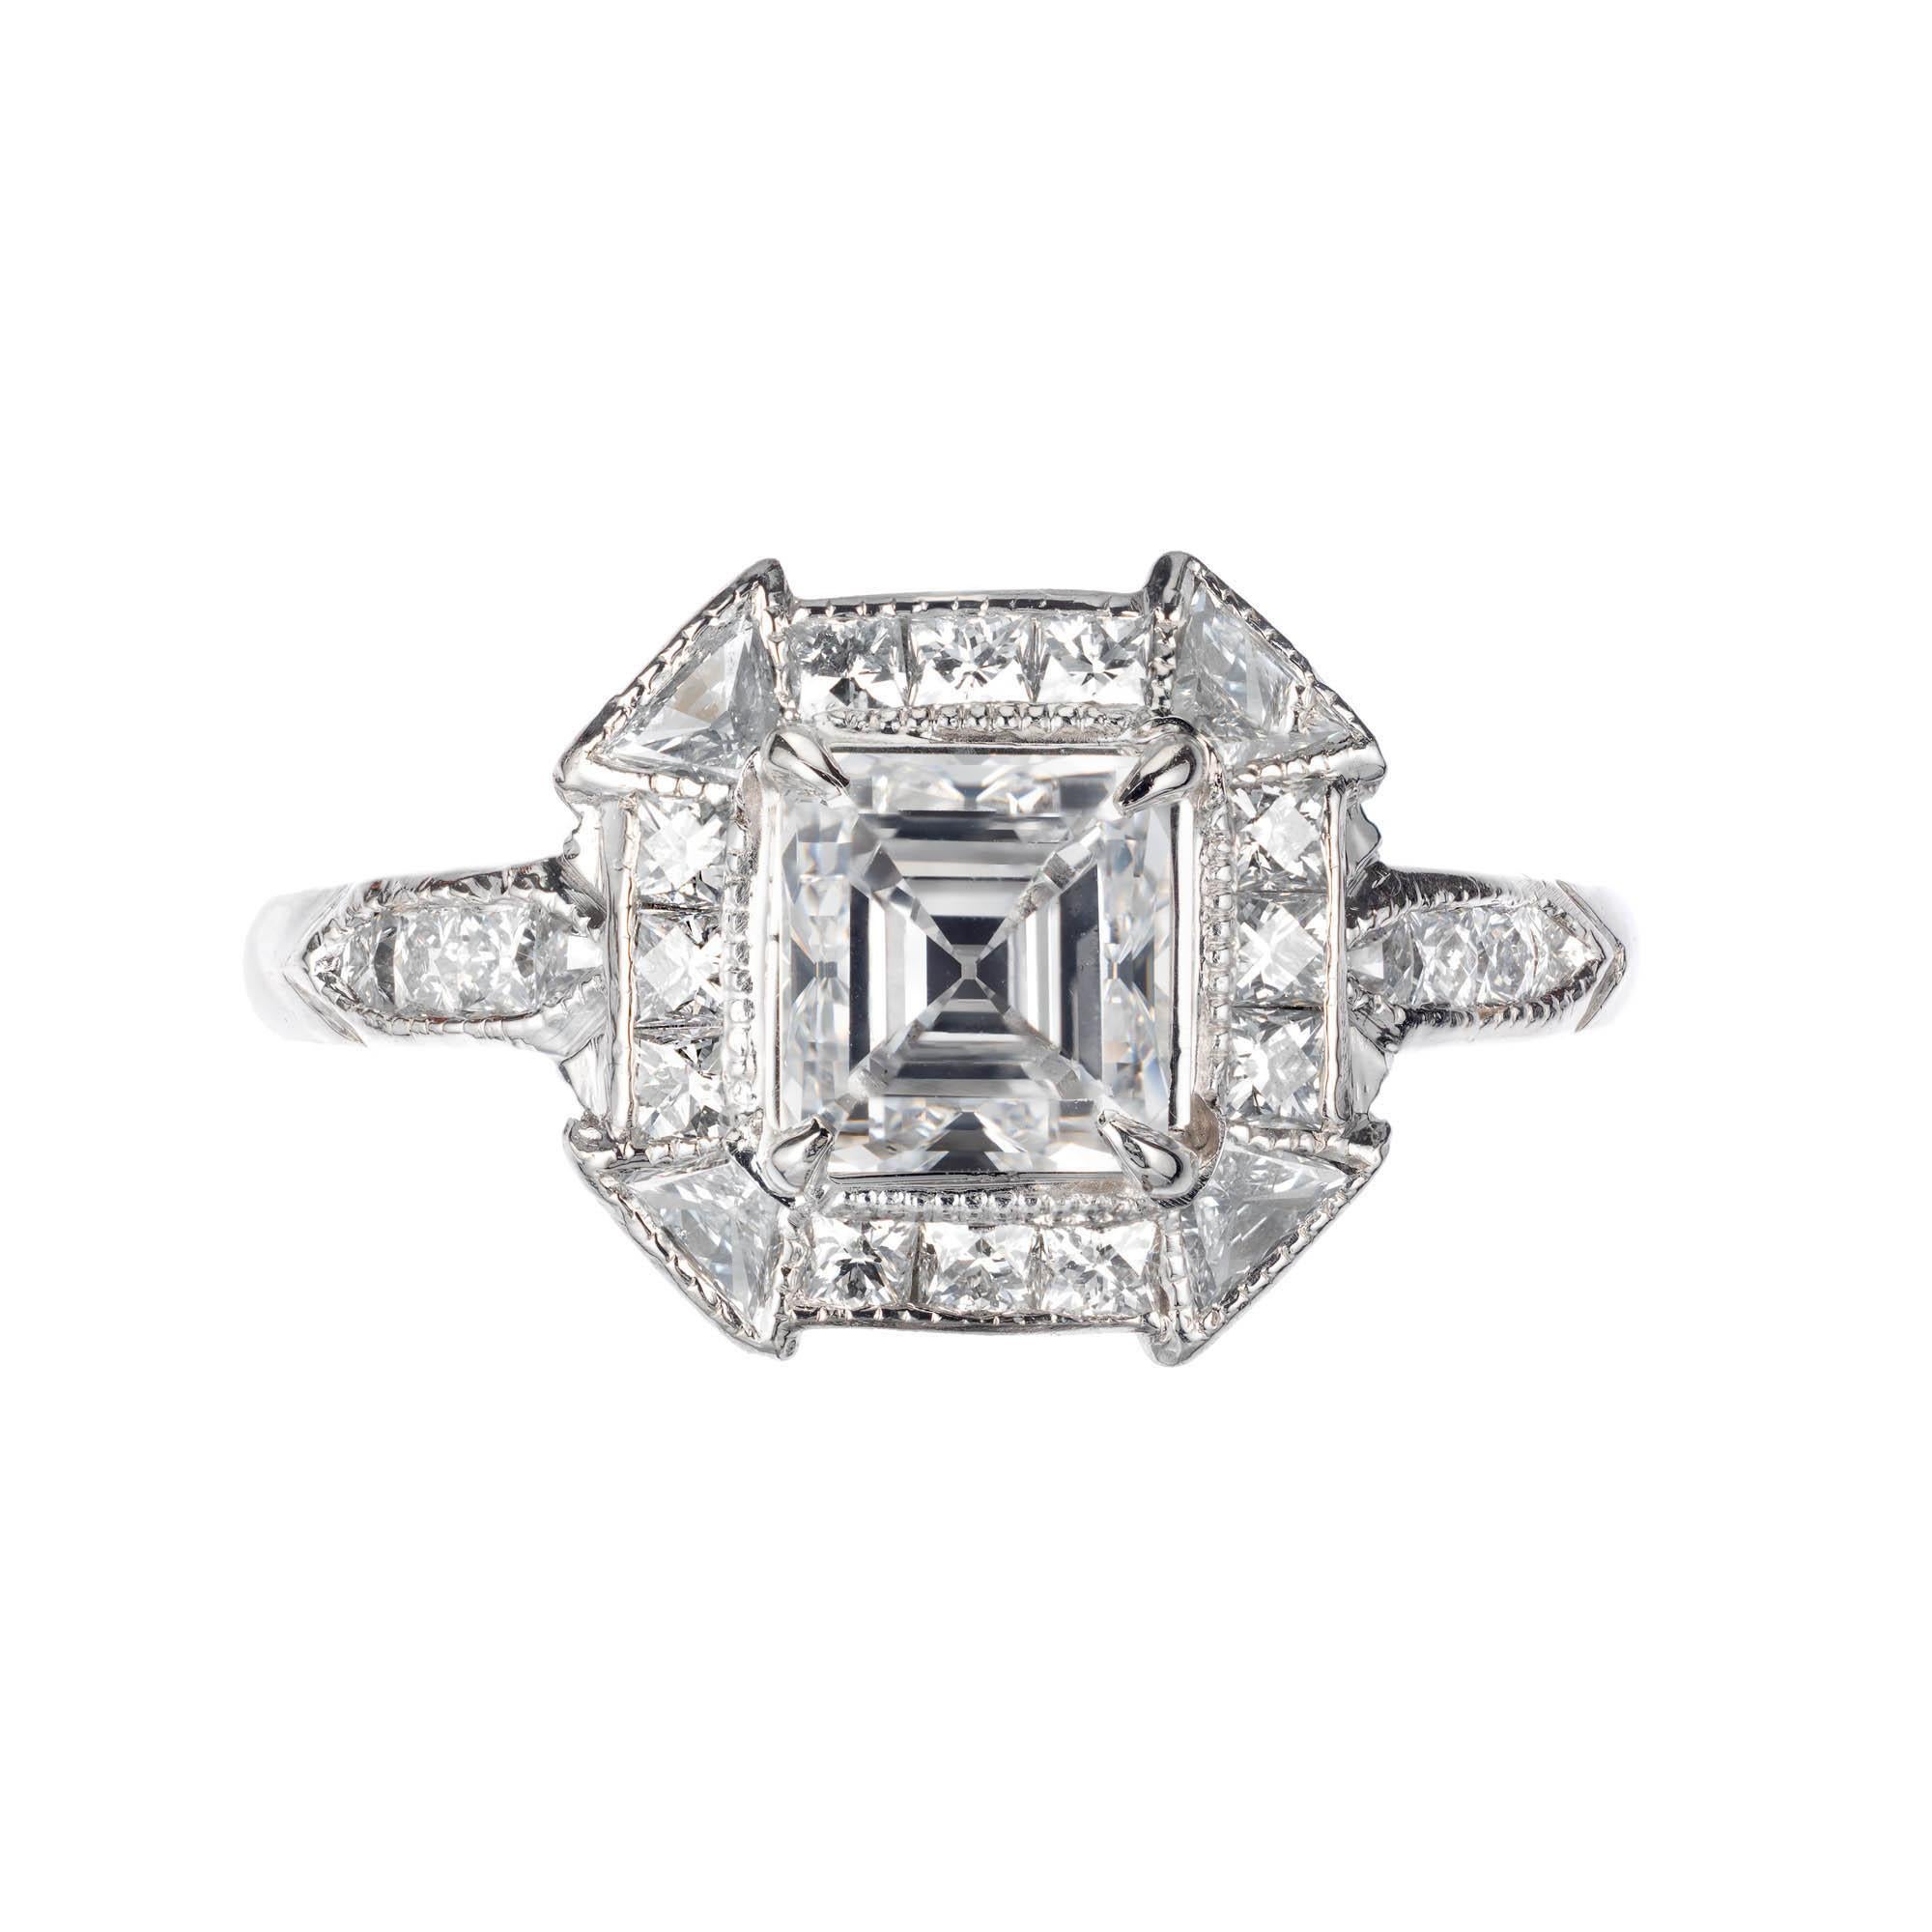 Peter Suchy Asscher cut diamond engagement ring. Platinum setting. Center diamond is an original 1920’s Asscher cut diamond with exceptional sparkle. GIA certified.

1 Asscher cut diamond D VS2. Approximate 1.21 carats. GIA certificate #